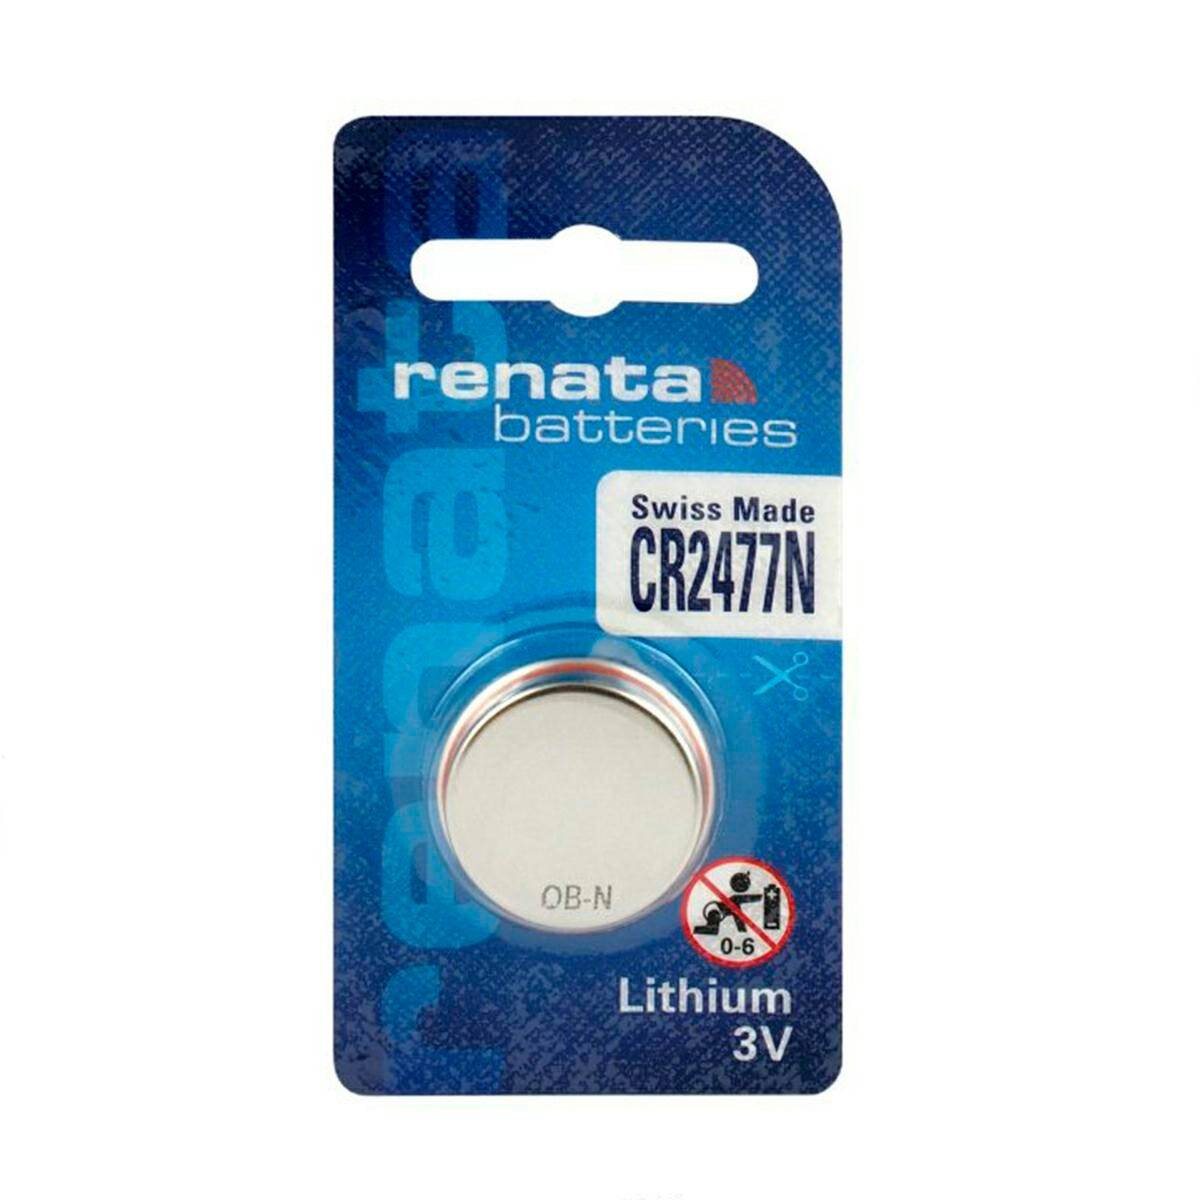 Batterie Renata CR2477N 3V 1PAK